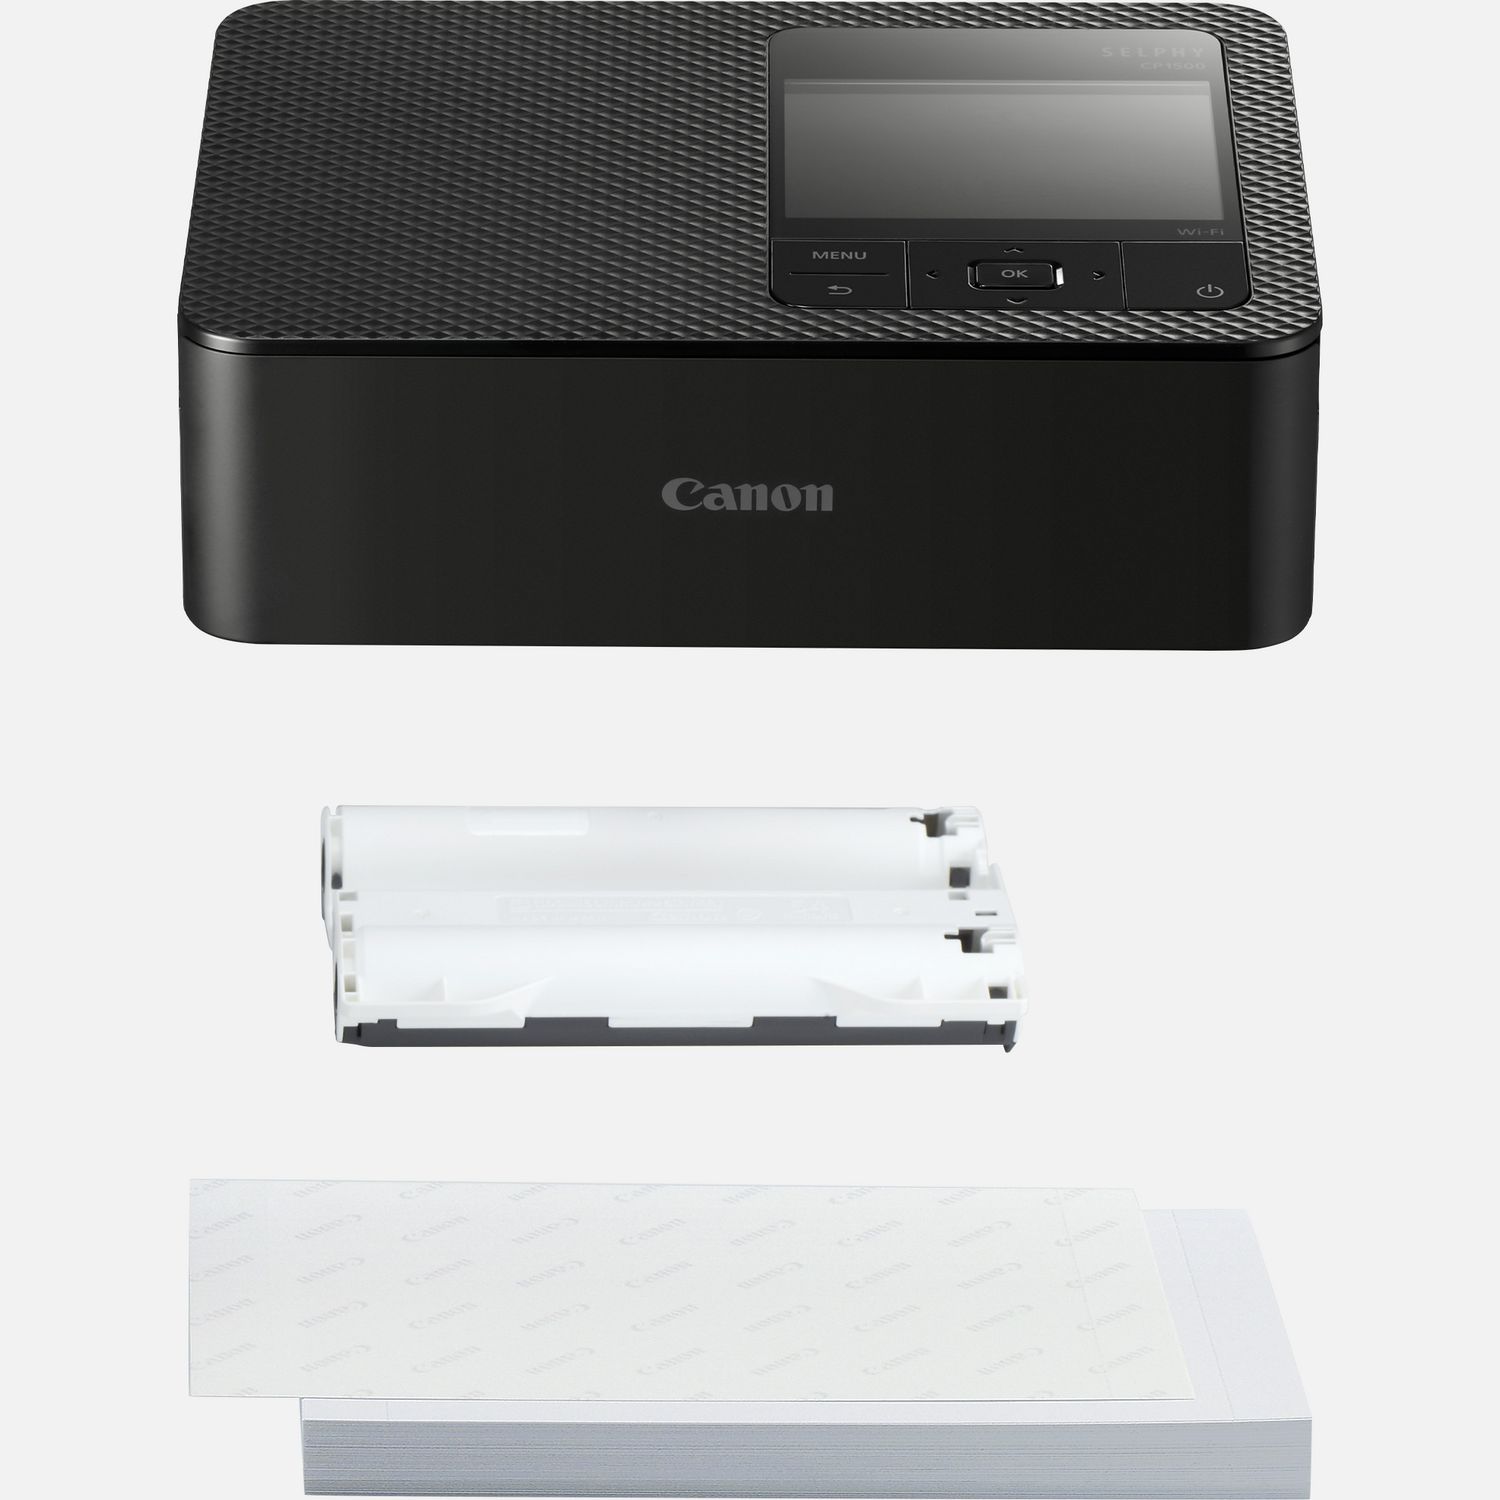 Canon Selphy CP1500 Impresora fotográfica compacta inalámbrica (negro) con  2 paquetes de papel de tinta a color KP-108IN (216 hojas de papel de 4 x 6  + 6 cartuchos de tinta), adaptador de corriente y : Productos de Oficina 